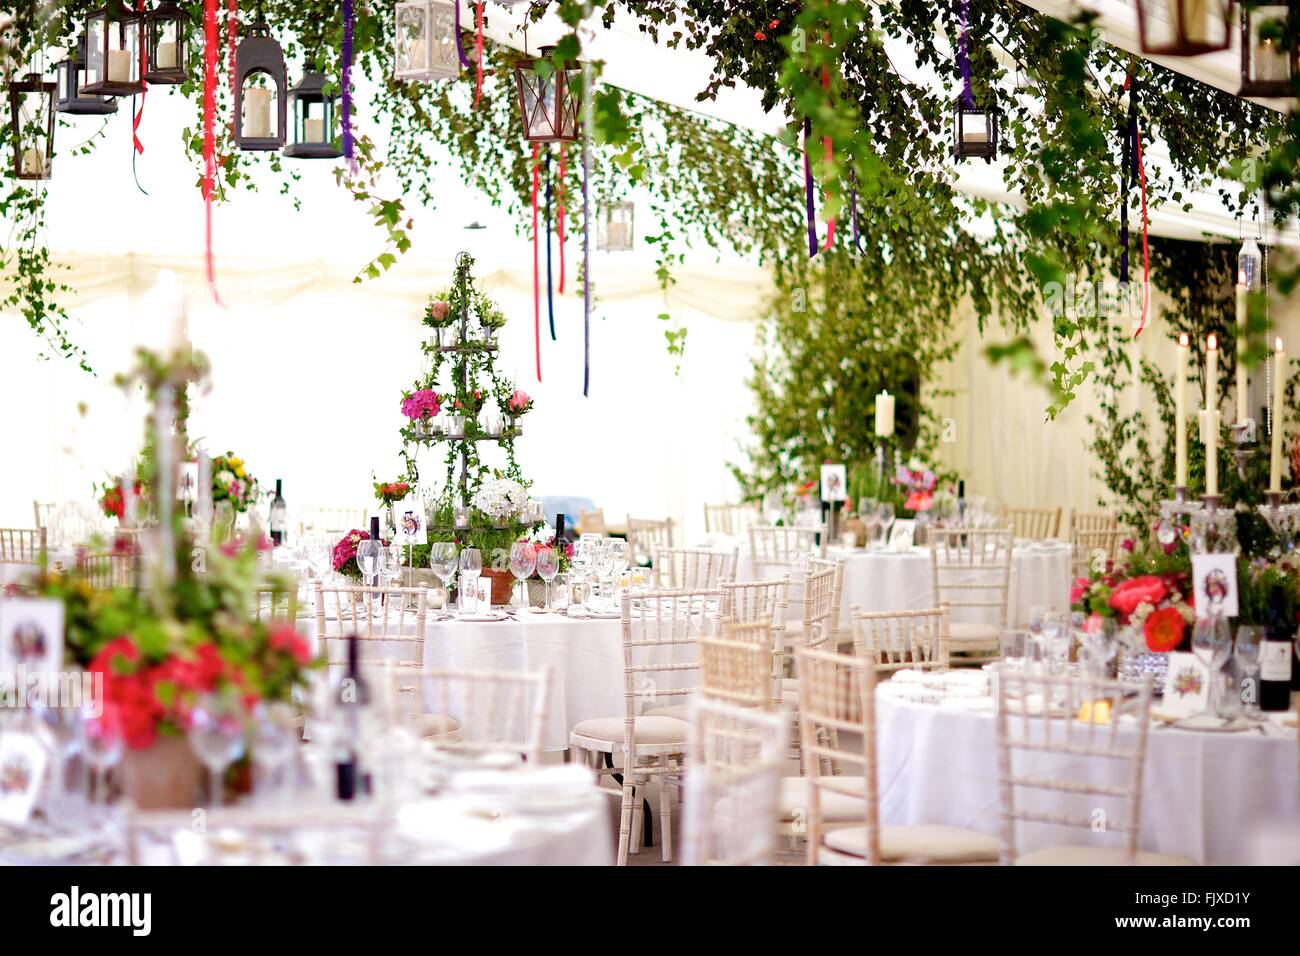 Matrimoni, Eventi, banchetti o occasione speciale decorazione della tavola e fiori e sposa sposo, livello, margherite & Roses Foto Stock